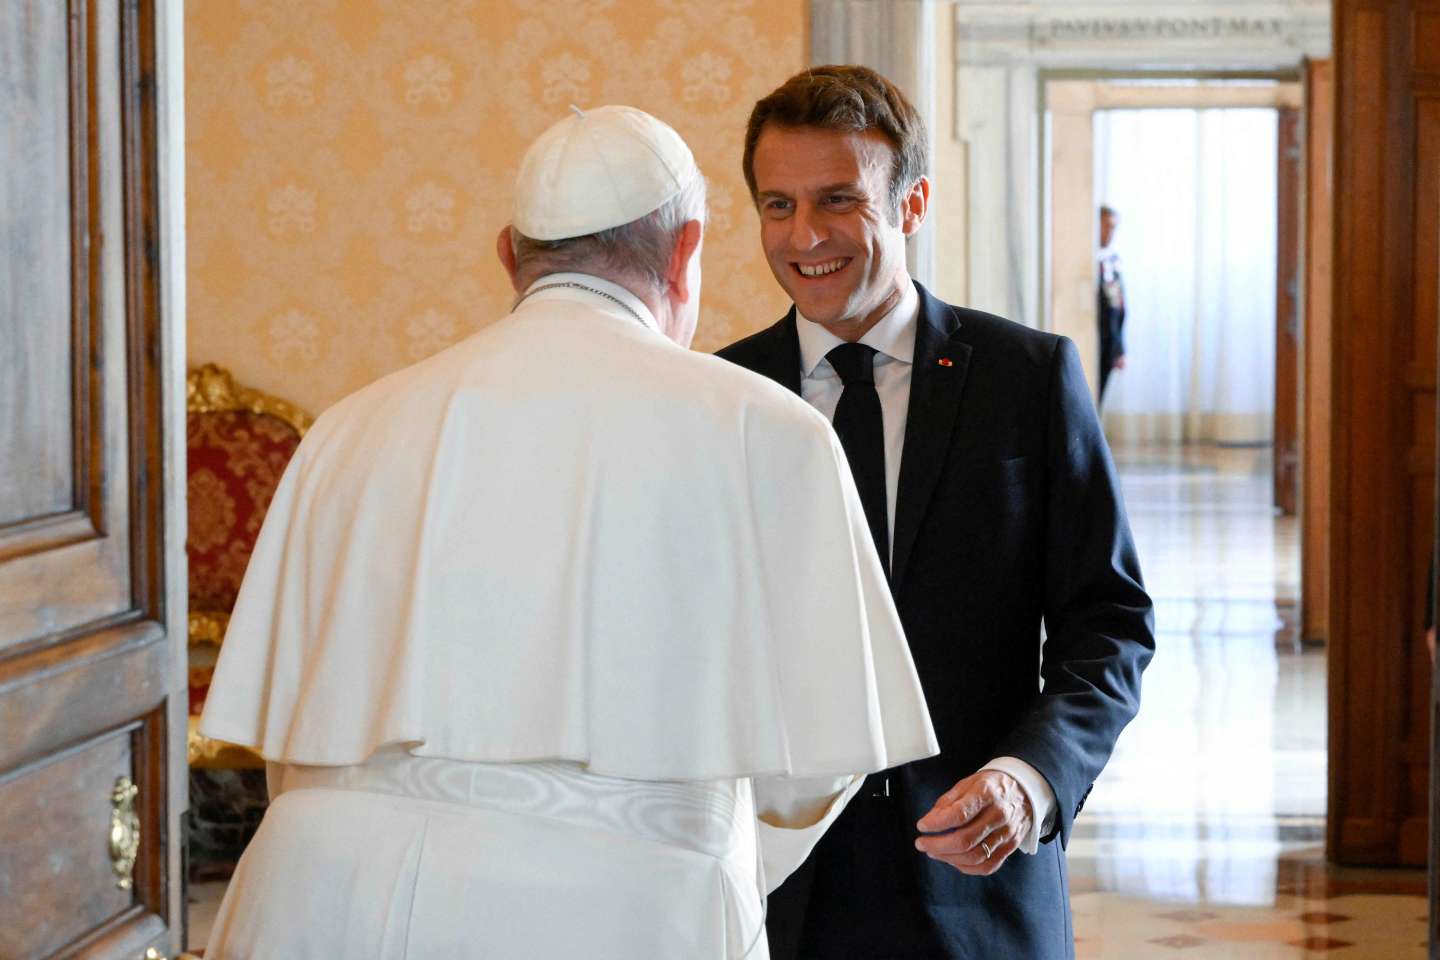 Emmanuel Macron dit qu’il assistera à la messe du pape en tant que président, « pas en tant que catholique »